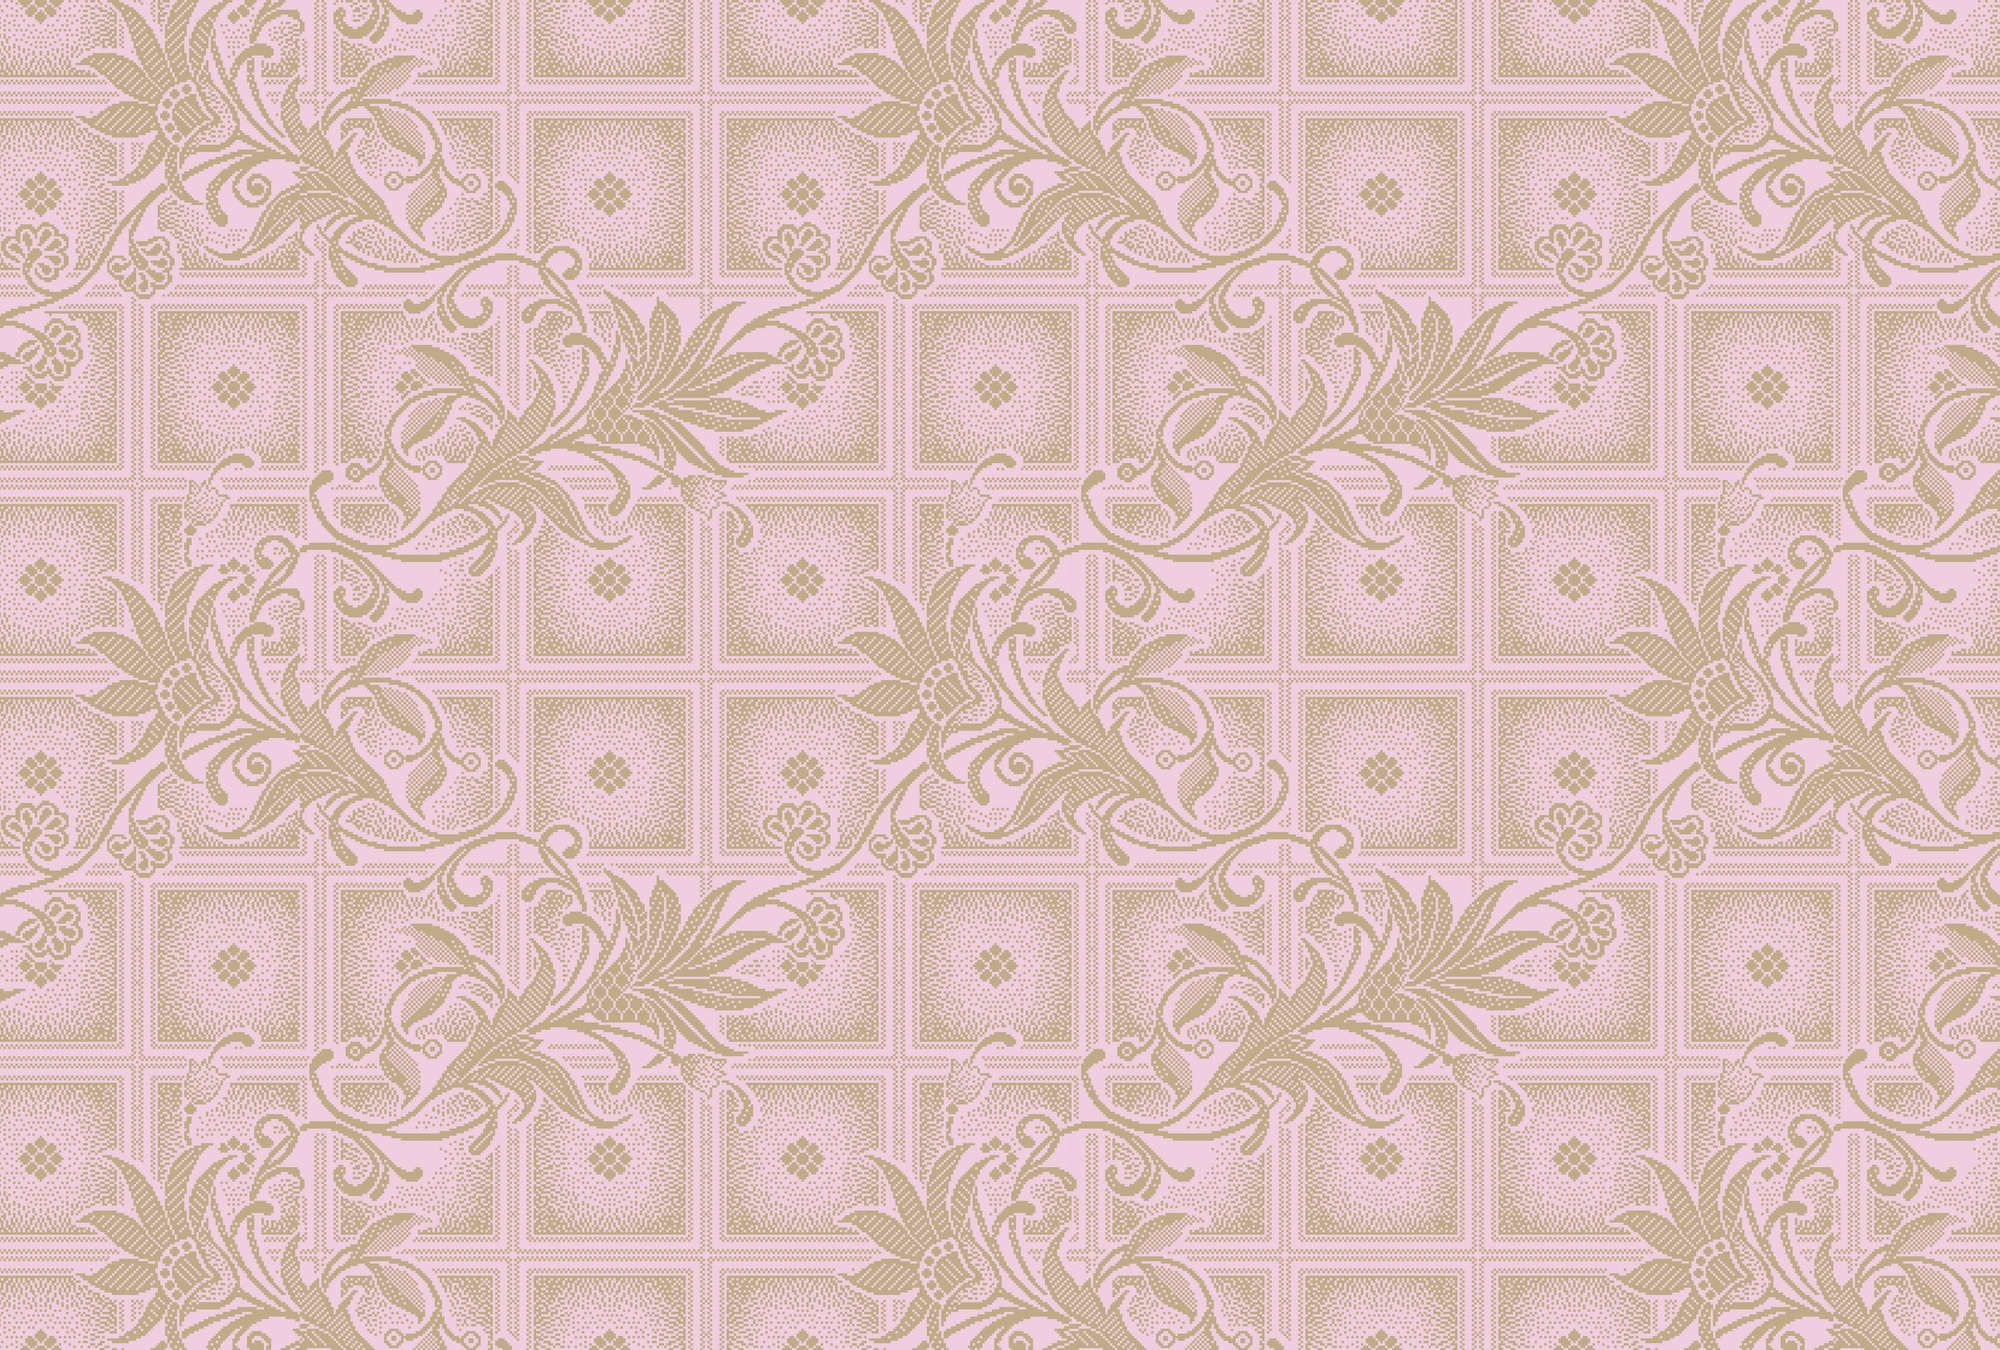             papier peint en papier »vivian« - carrés de style pixel avec fleurs - rose | intissé légèrement structuré
        